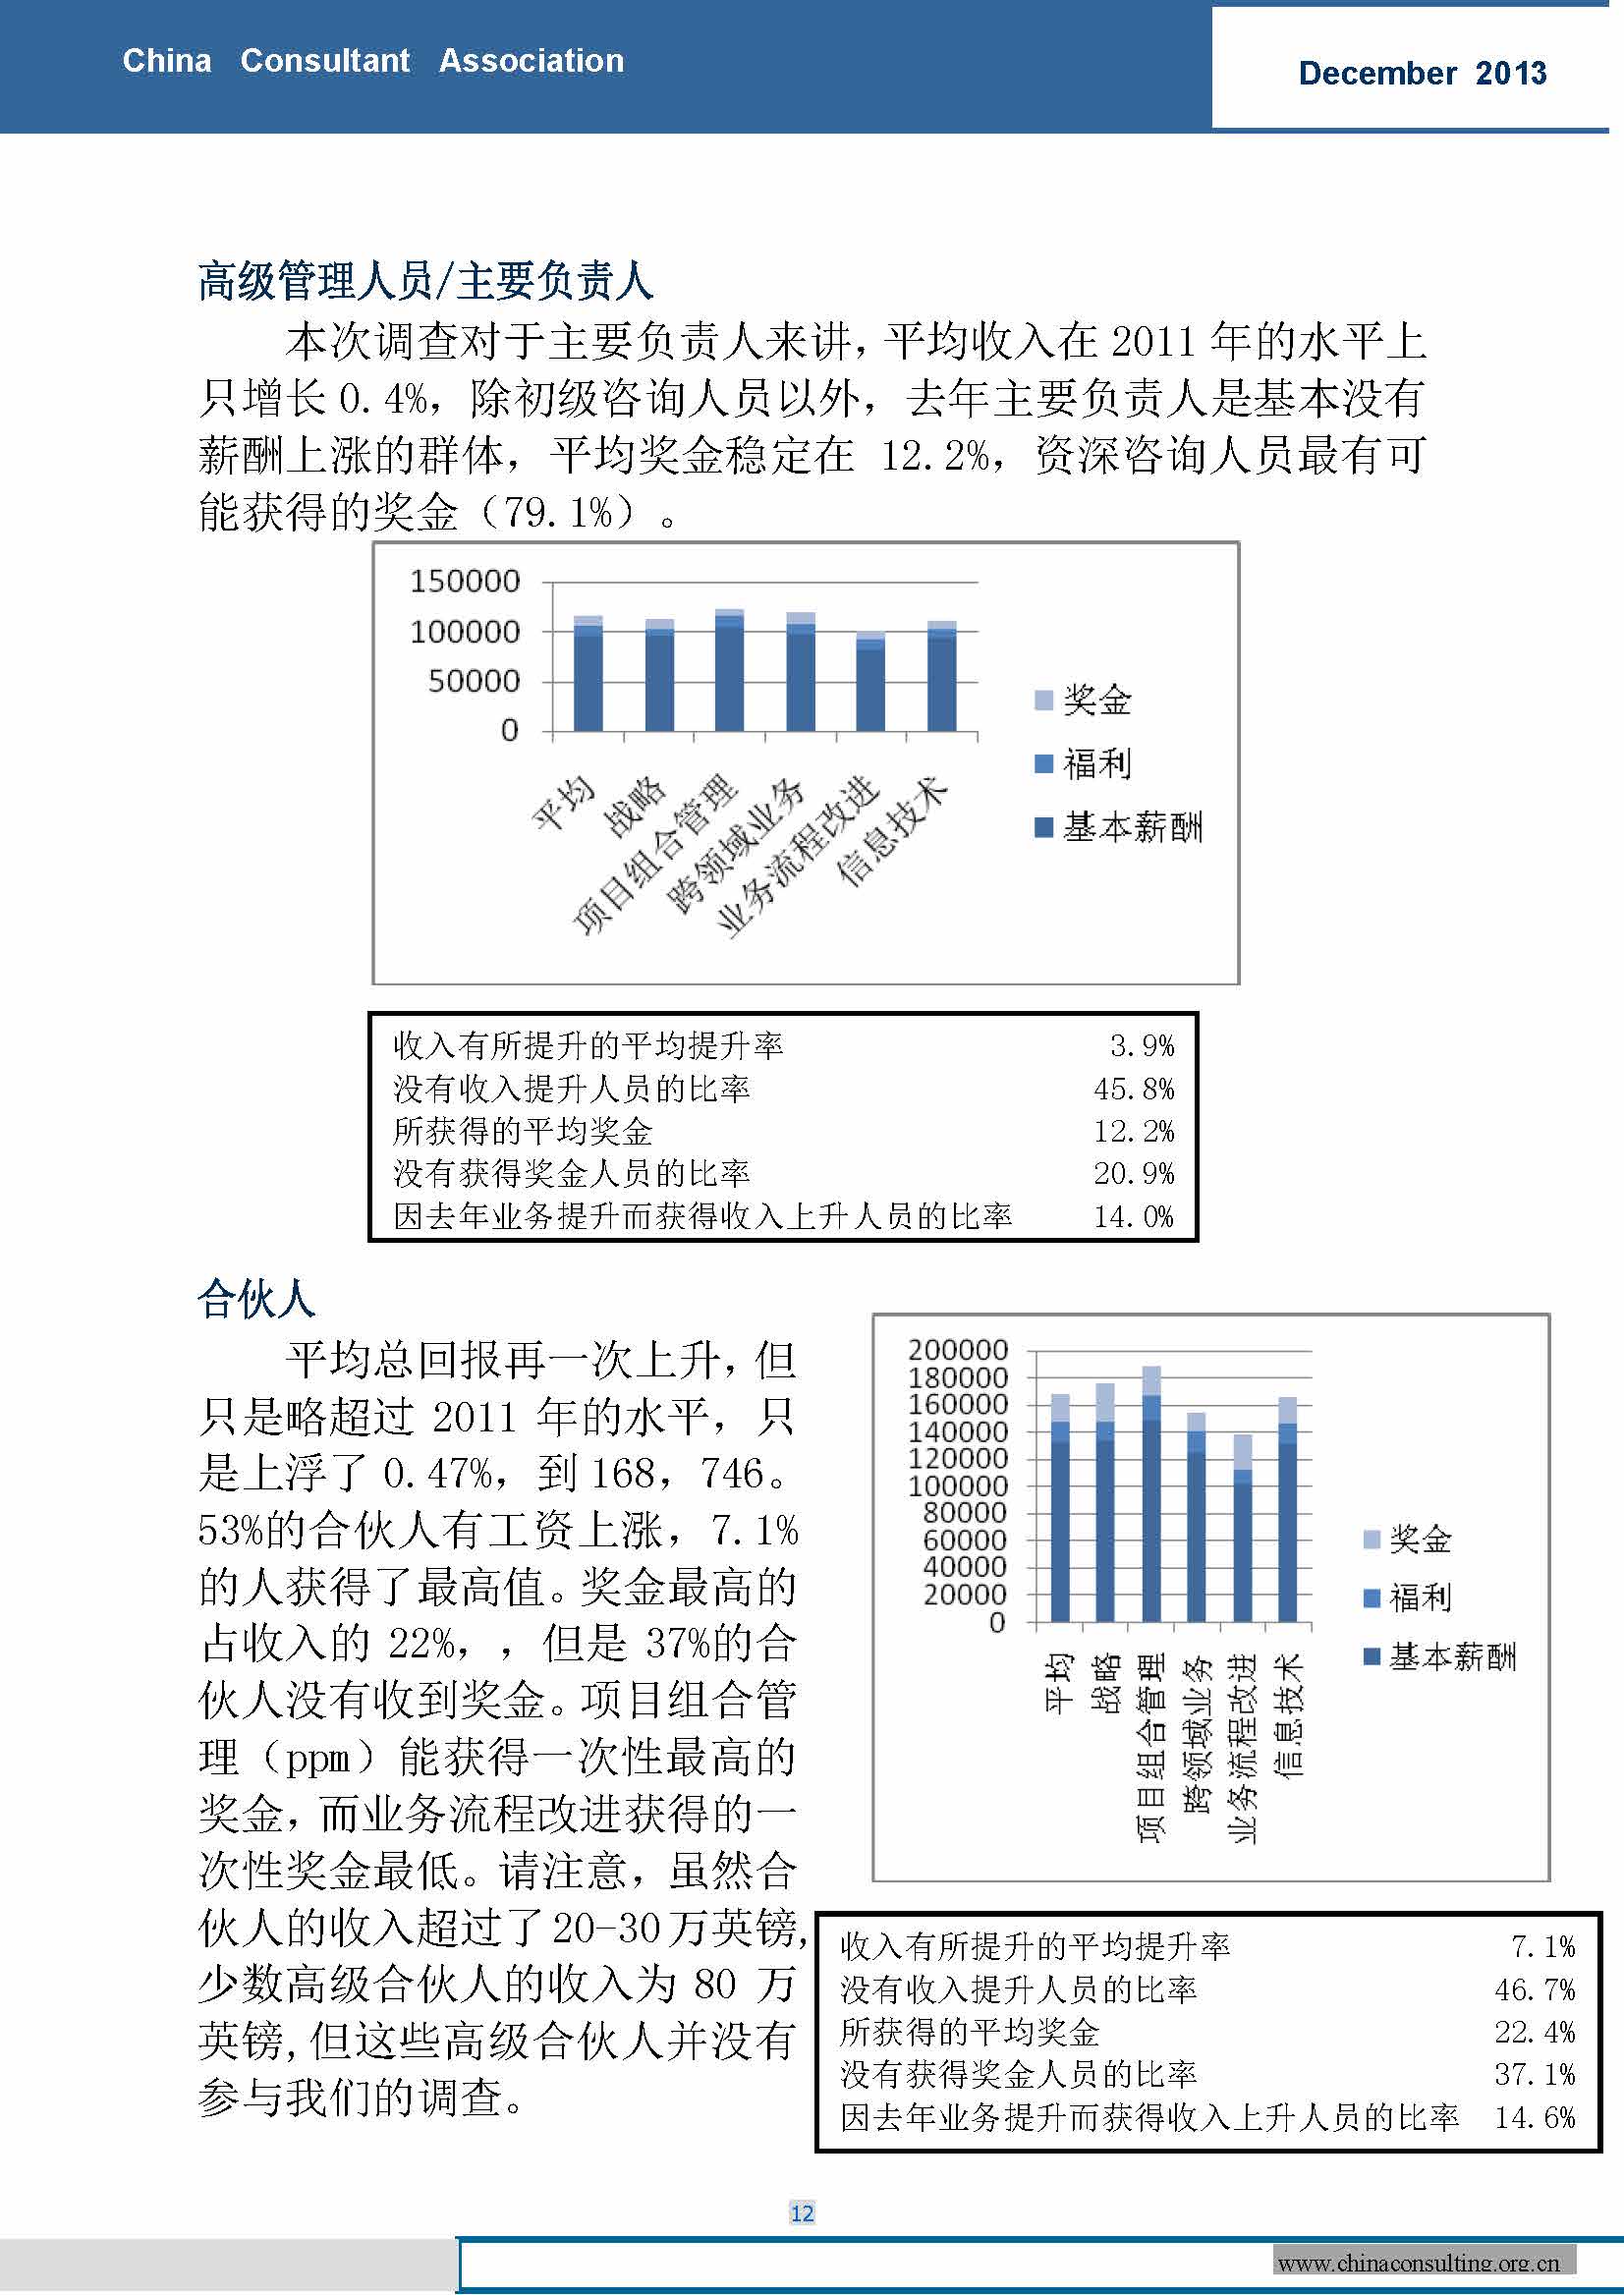 16中国科技咨询协会国际快讯（第十六期）_页面_14.jpg